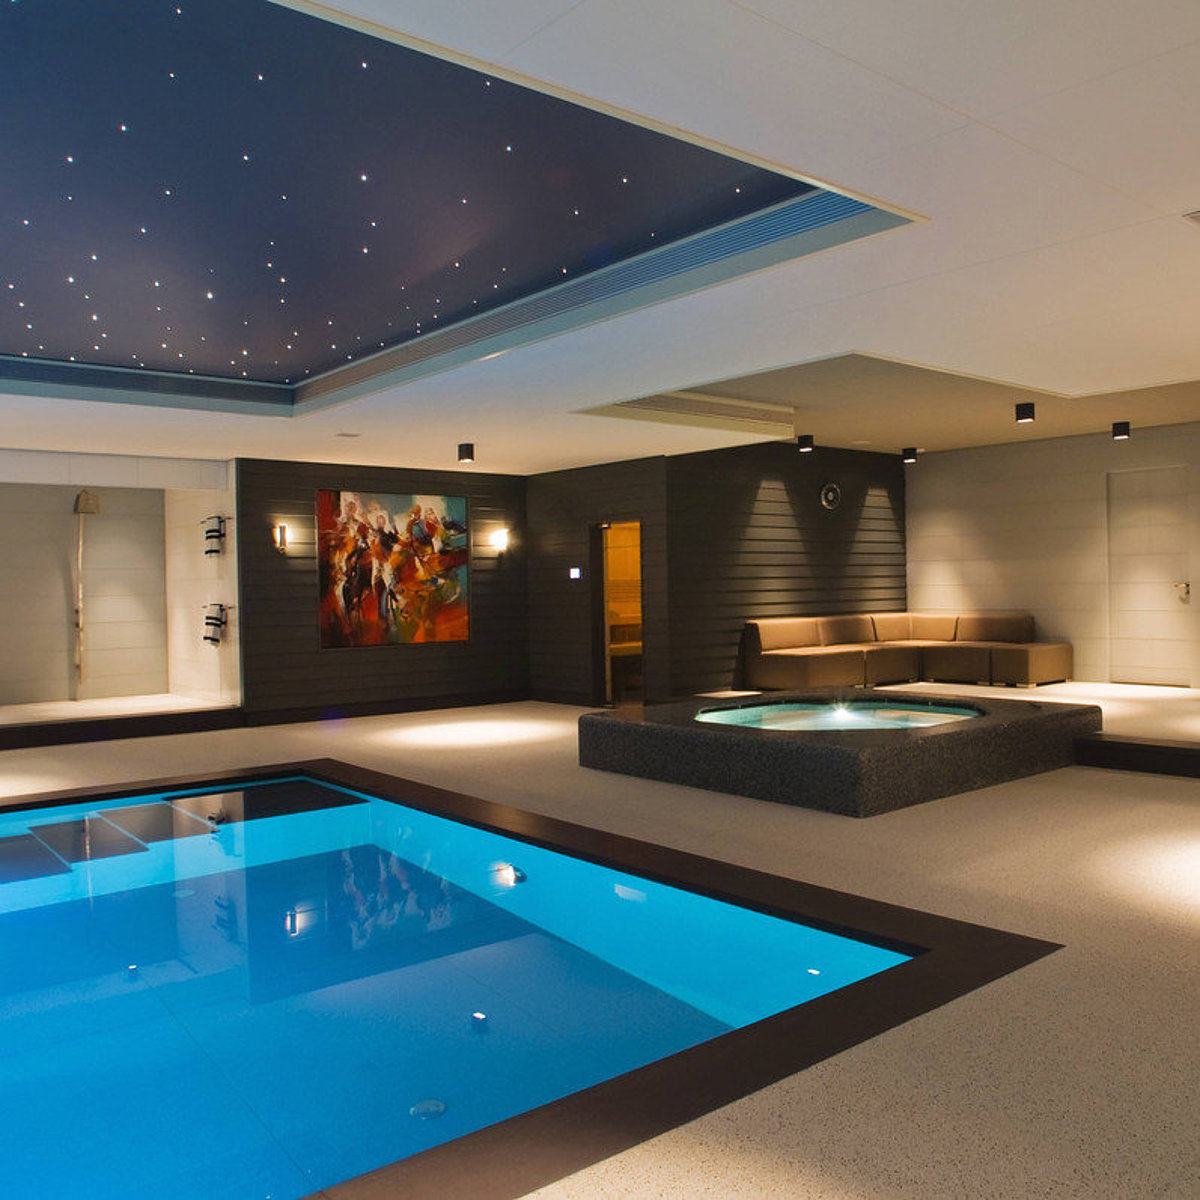 Een wellnessruimte met zwembad, whirlpool, doucheruimte en verlichting - inclusief een sterrenhemel aan het plafond.